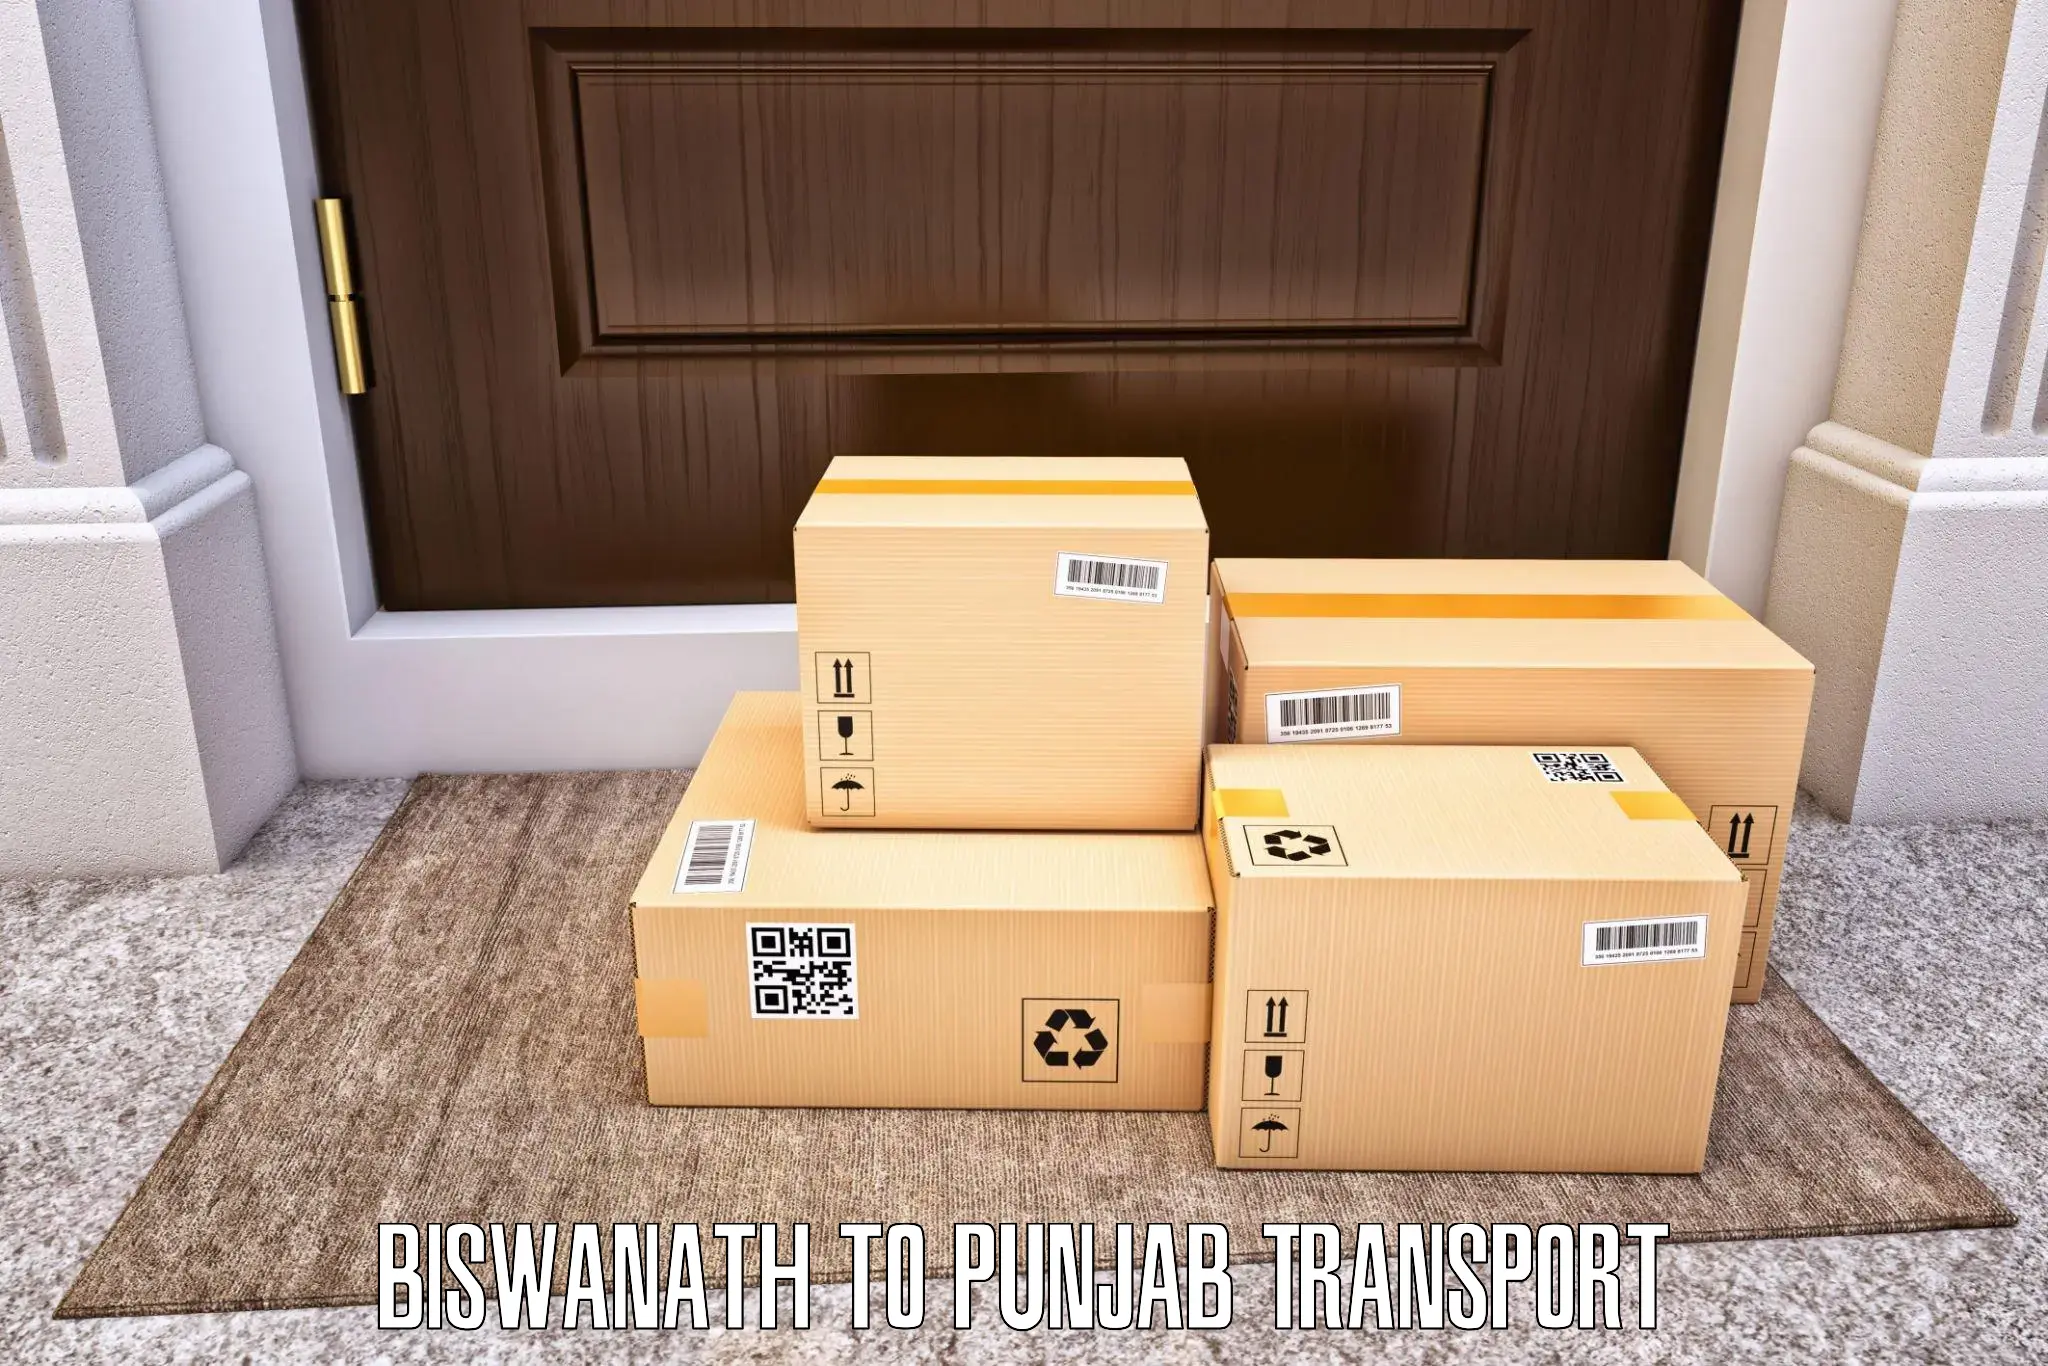 Online transport service Biswanath to Sangrur